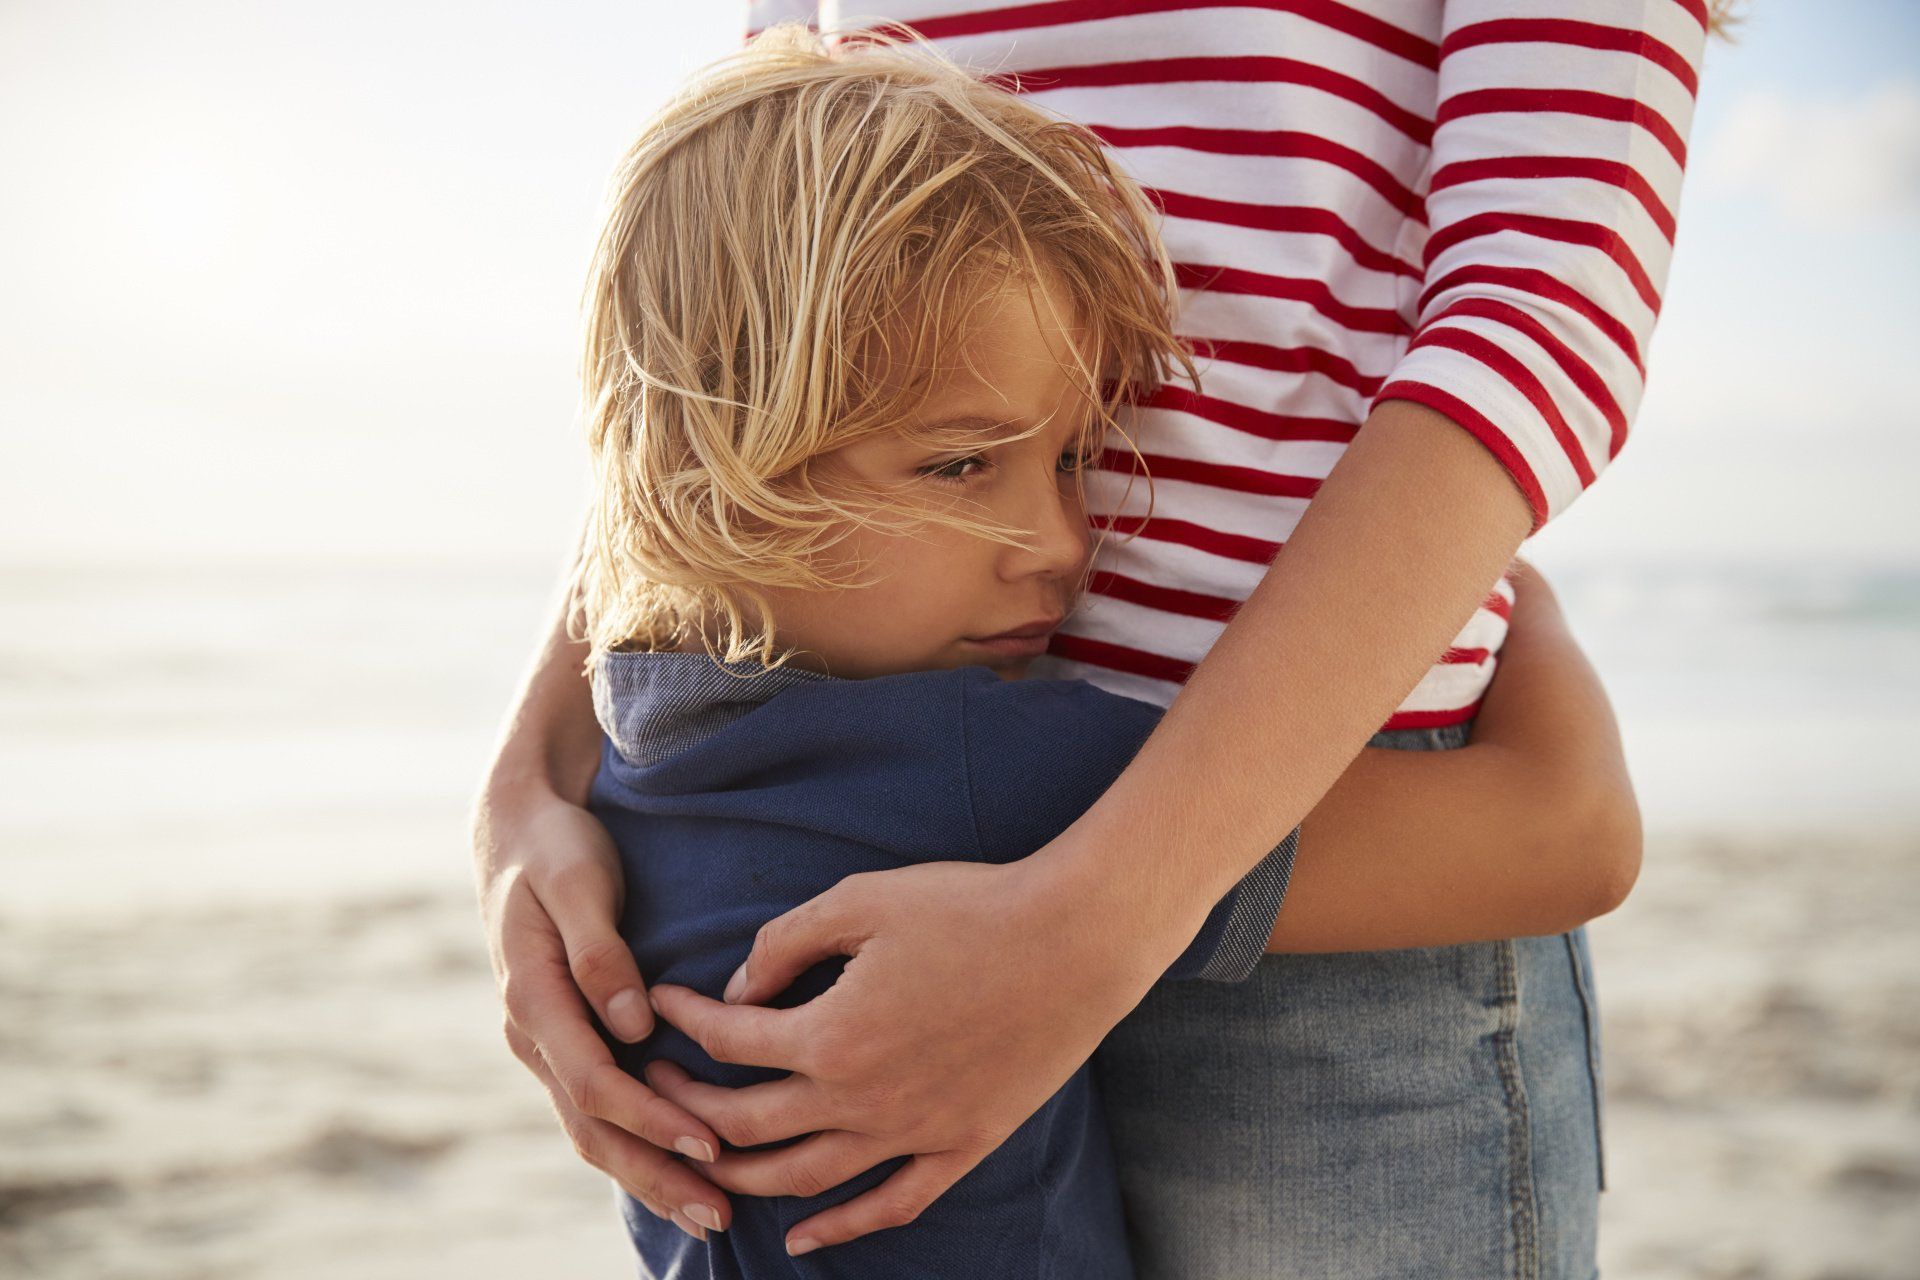 Kinderpsychotherapeuten helfen, das gegenseitige Verständnis zwischen Kind und Eltern zu fördern.